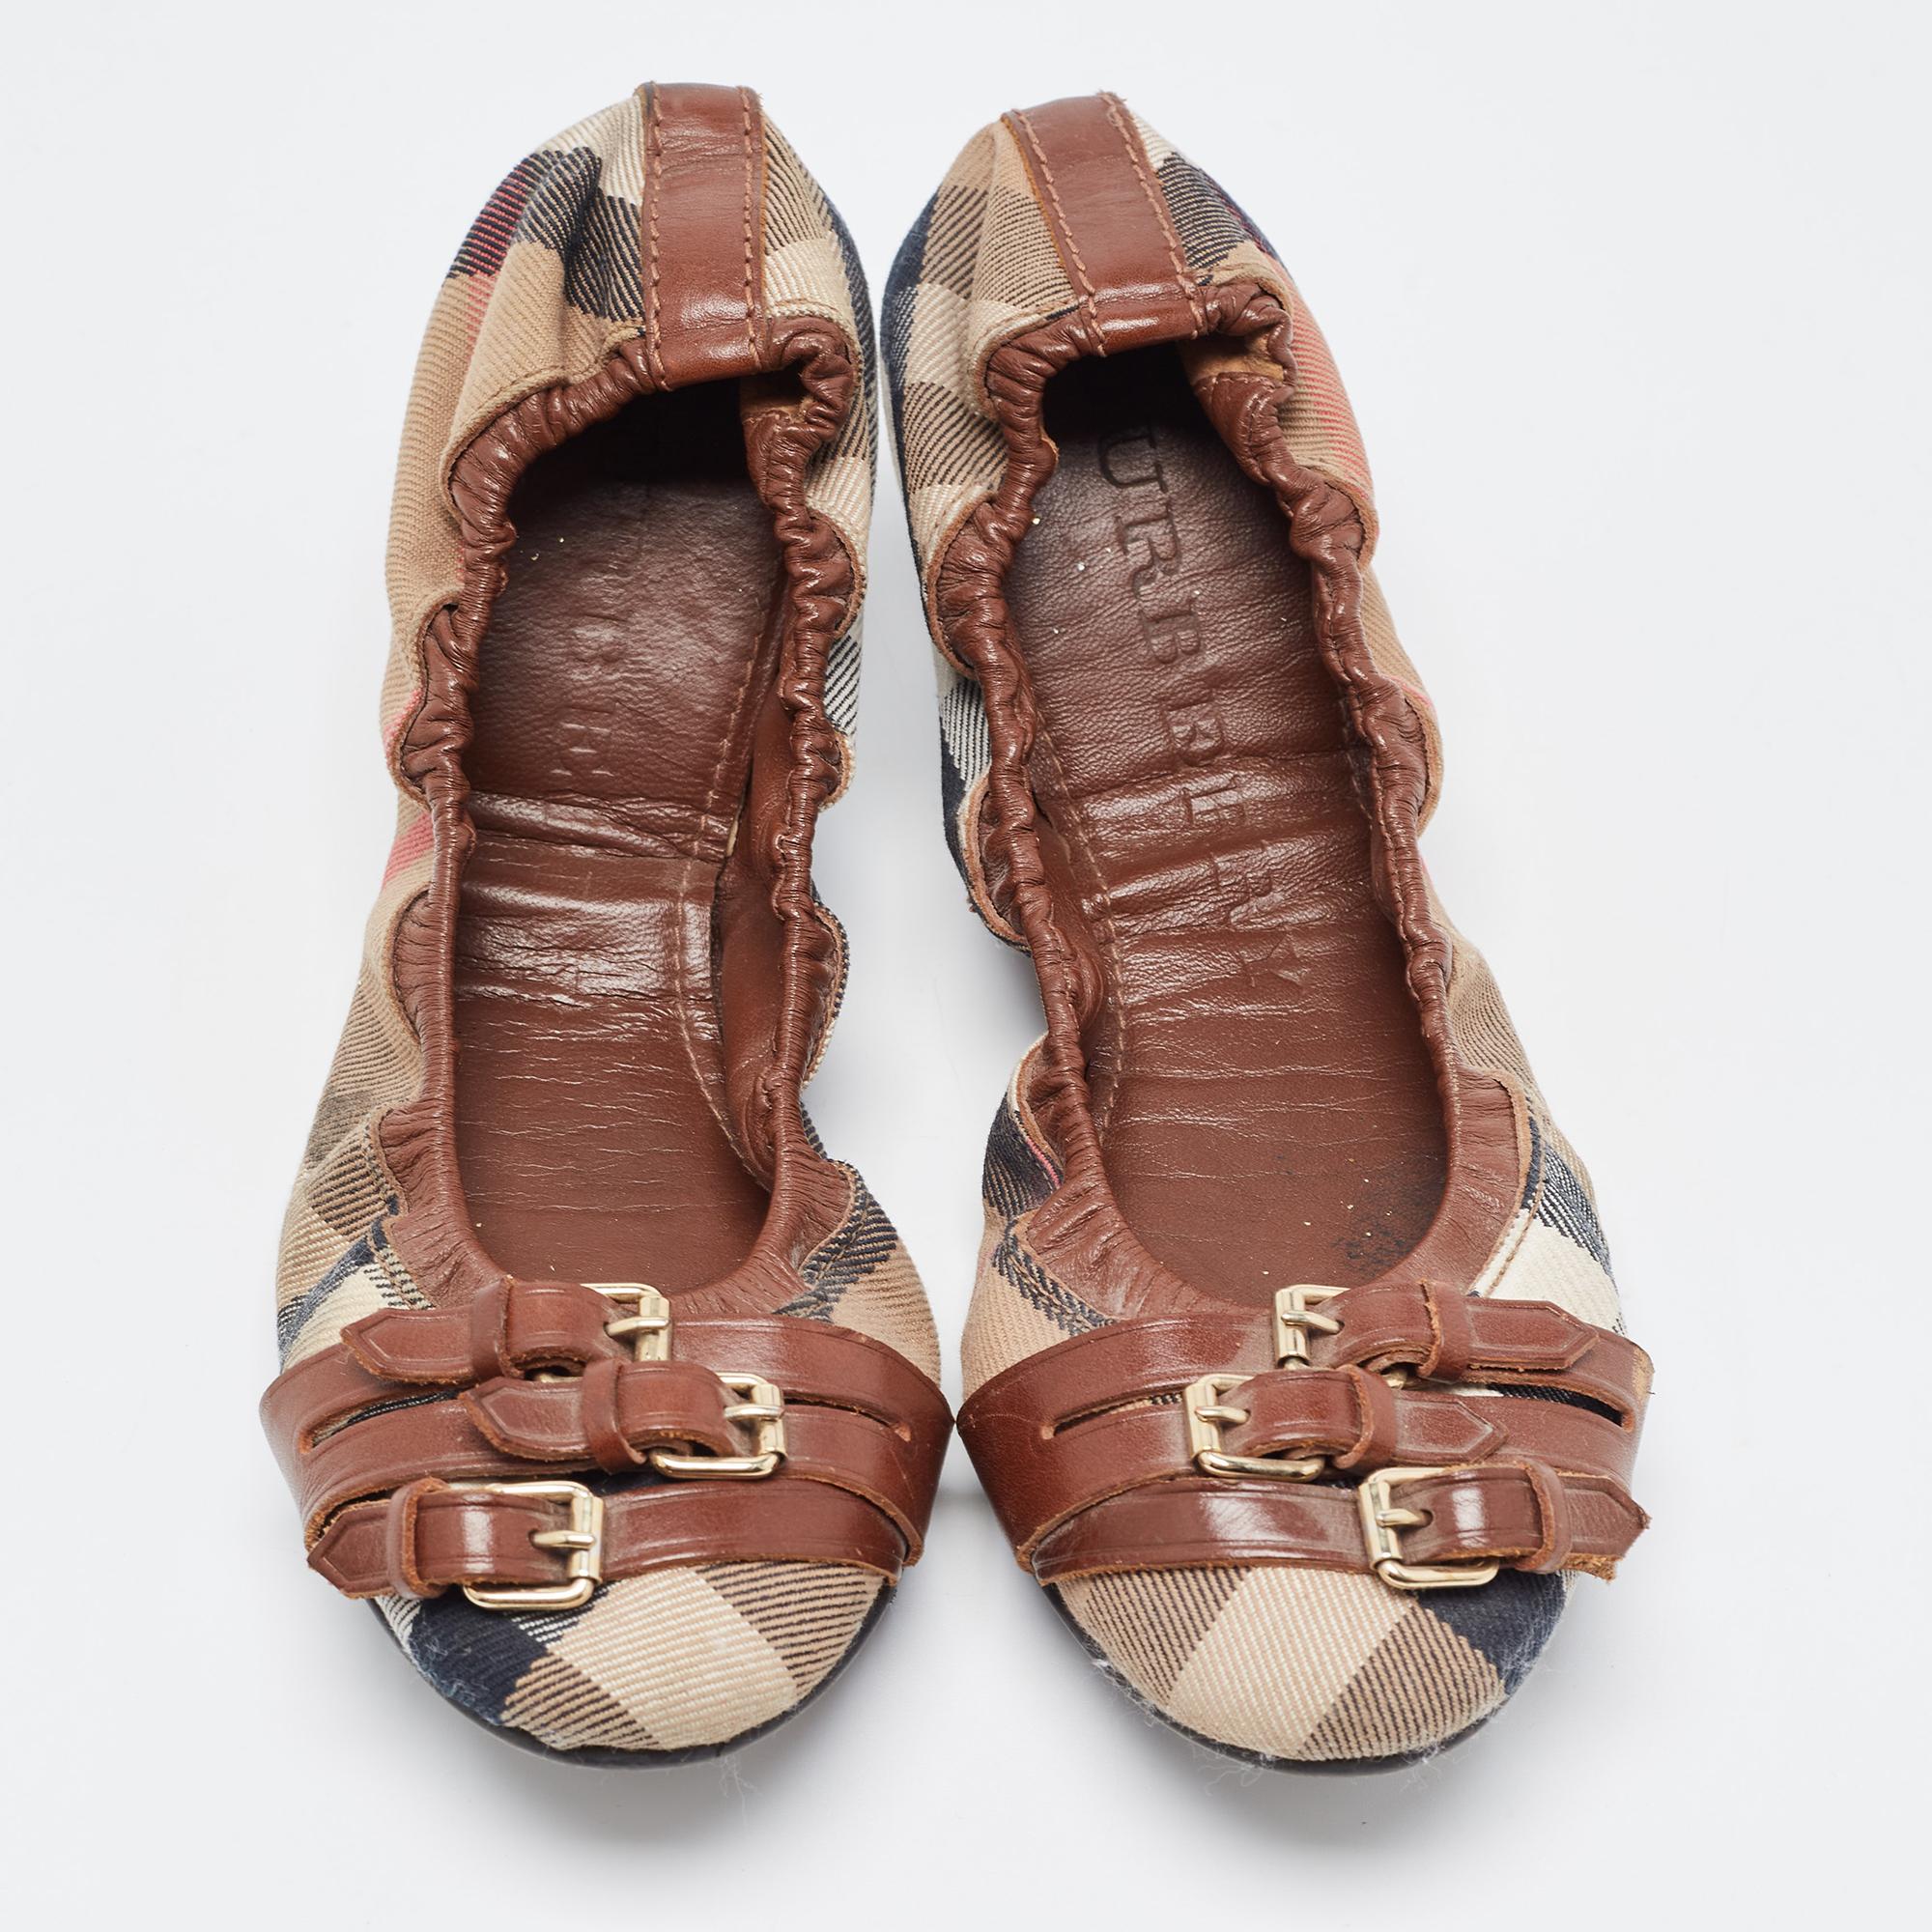 Donnez à votre tenue une touche de luxe avec cette paire de ballerines Burberry. Les chaussures sont parfaitement cousues pour vous permettre de vous démarquer pendant longtemps.

